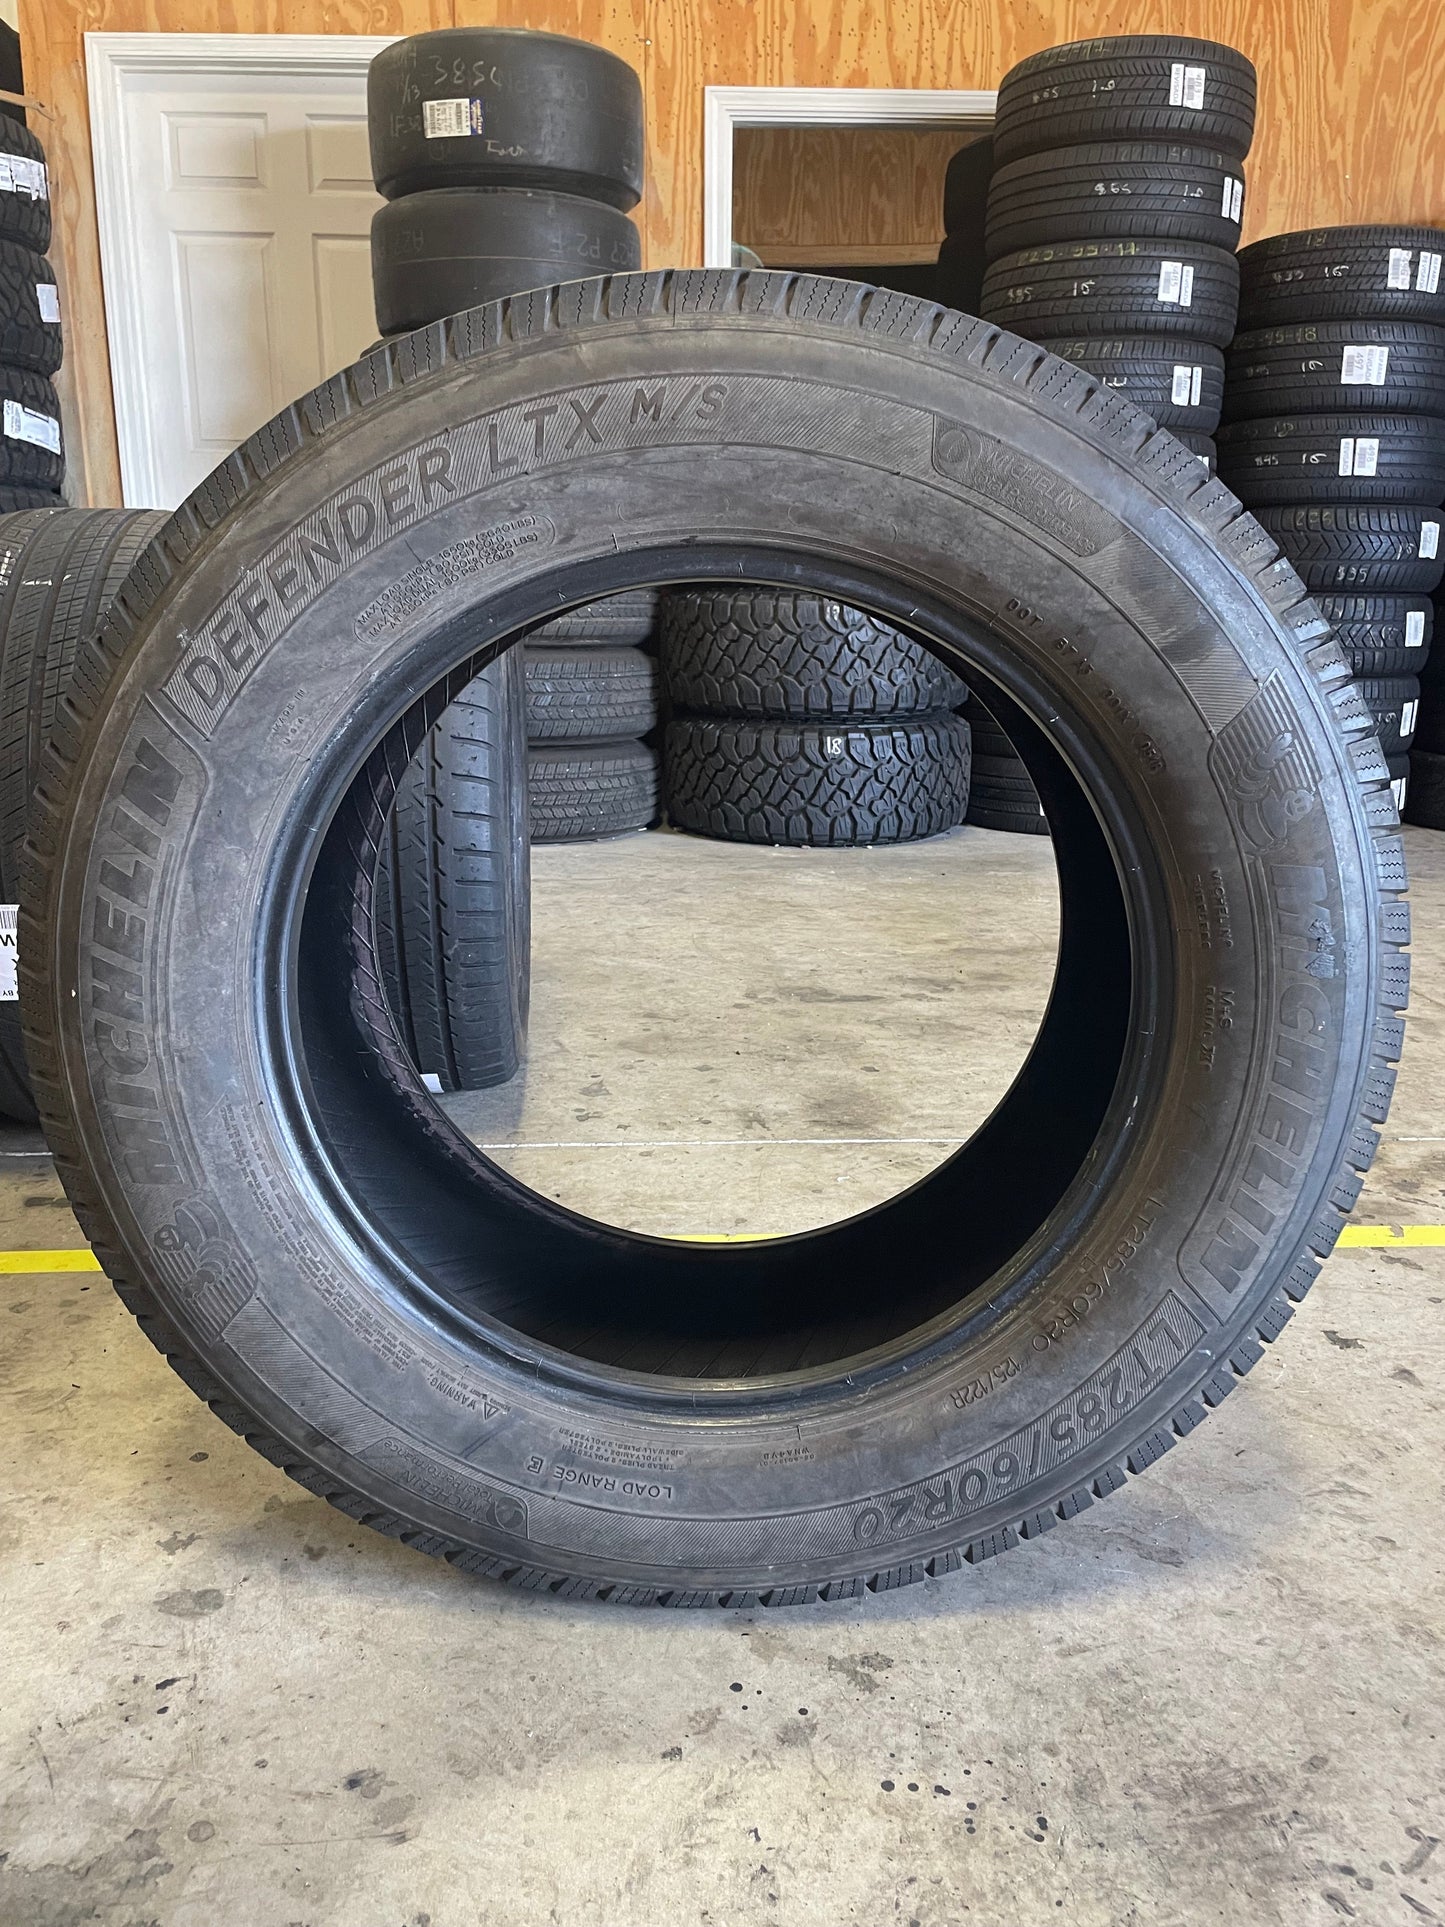 SINGLE 285/60R20 Michelin Defender LTX M/S 125/122 R E - Premium Used Tires